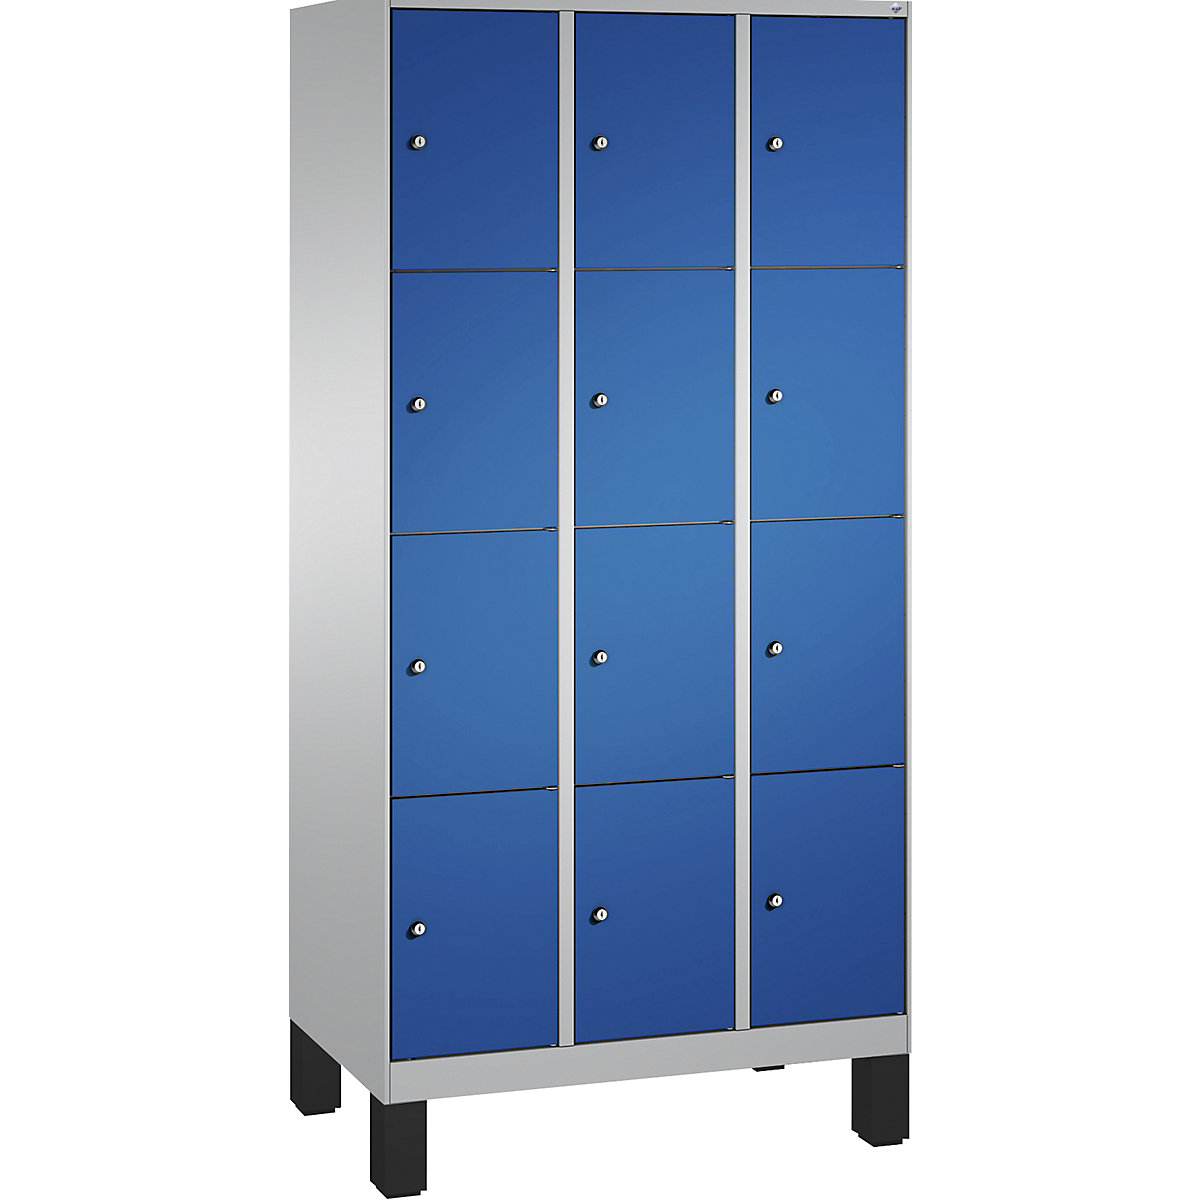 Armoire à casiers sur pieds EVOLO – C+P, 3 compartiments, 4 casiers chacun, largeur compartiments 300 mm, aluminium / bleu gentiane-8